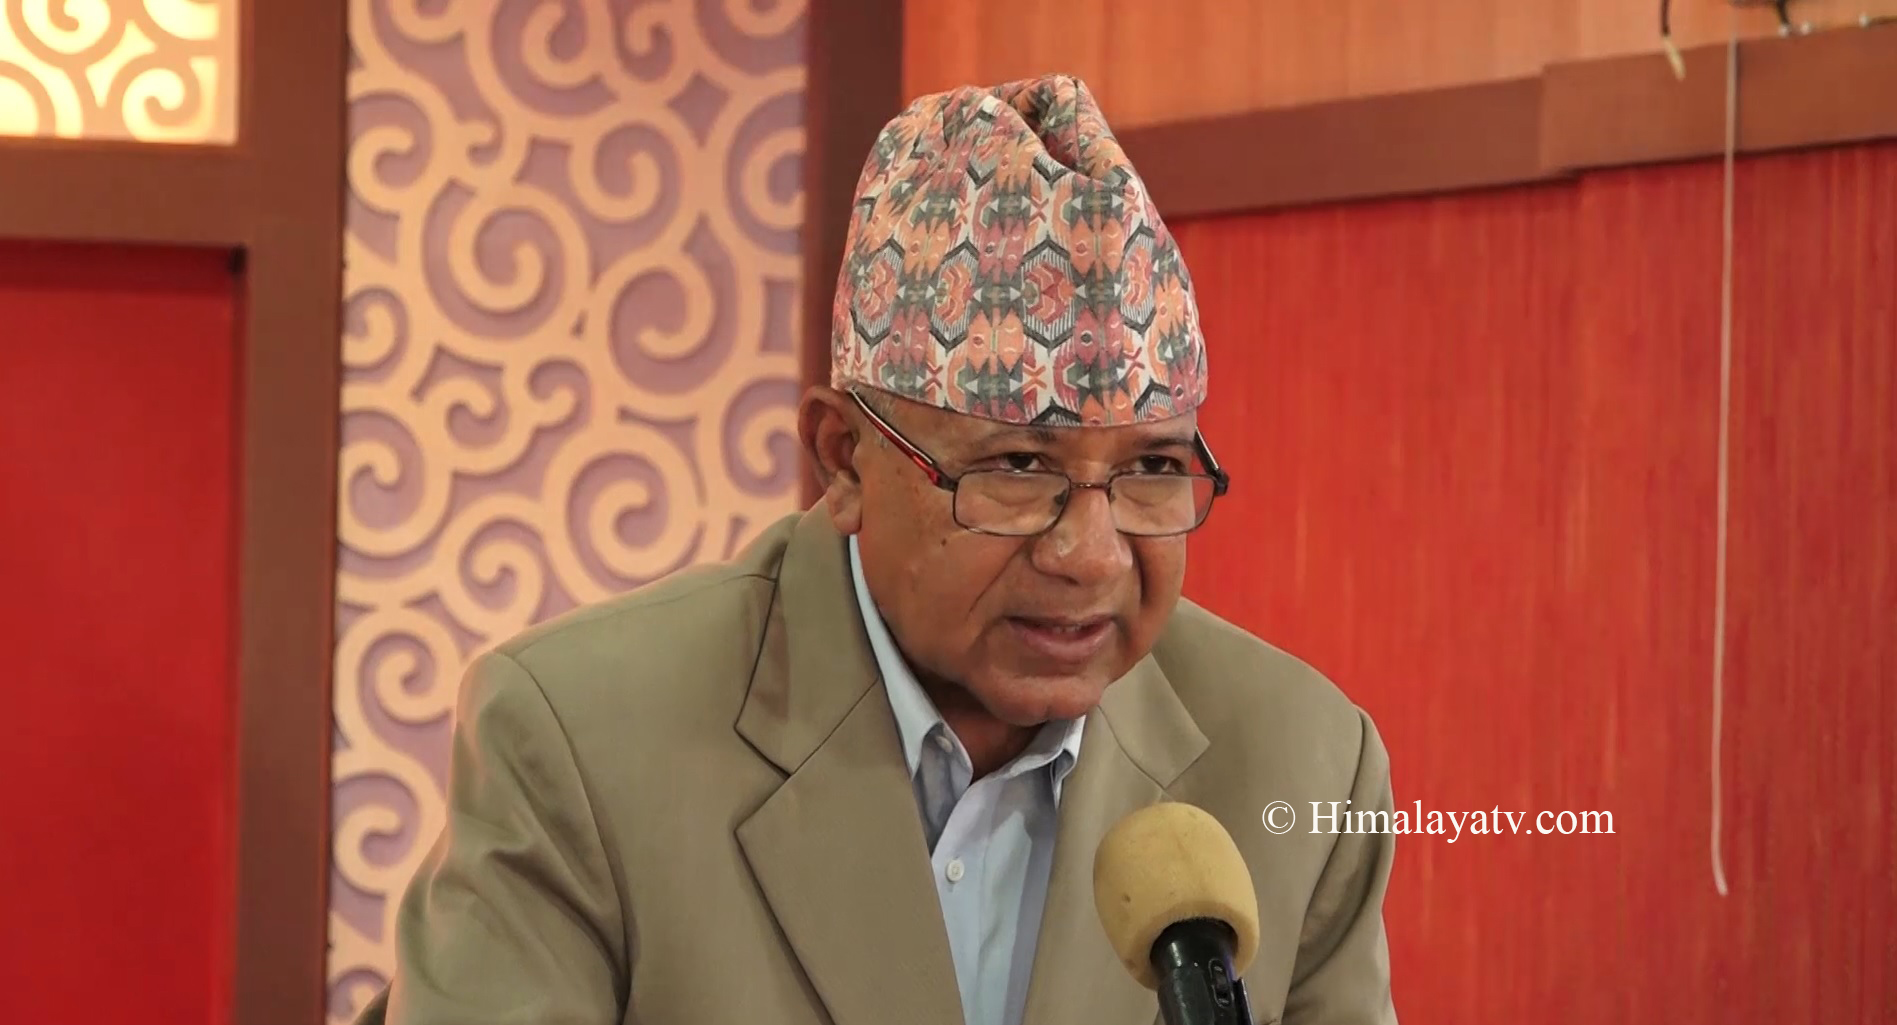 बालुवा पेलेर तेल निस्किनु र केपी ओली सुध्रिनु एउटै हो: अध्यक्ष नेपाल (भिडियो रिपोर्टसहित)